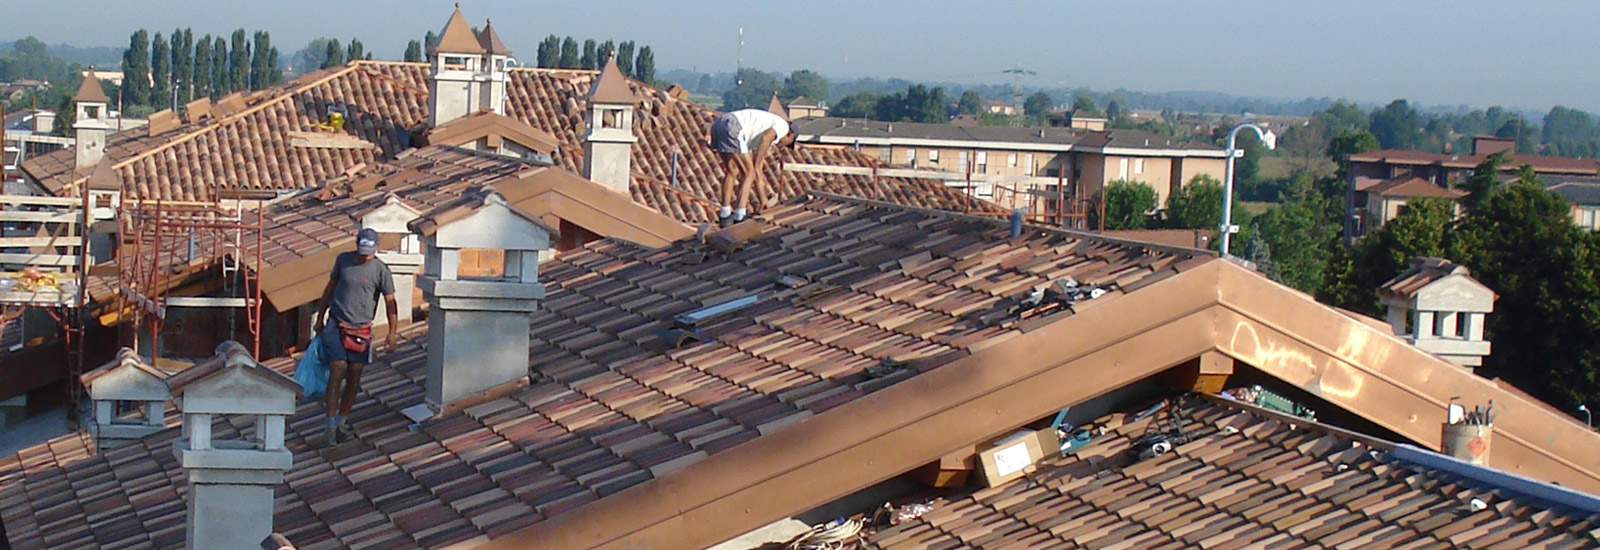 Rifacimento coperture edili bergamo ristrutturazione tetti e coperture civili ed industriali